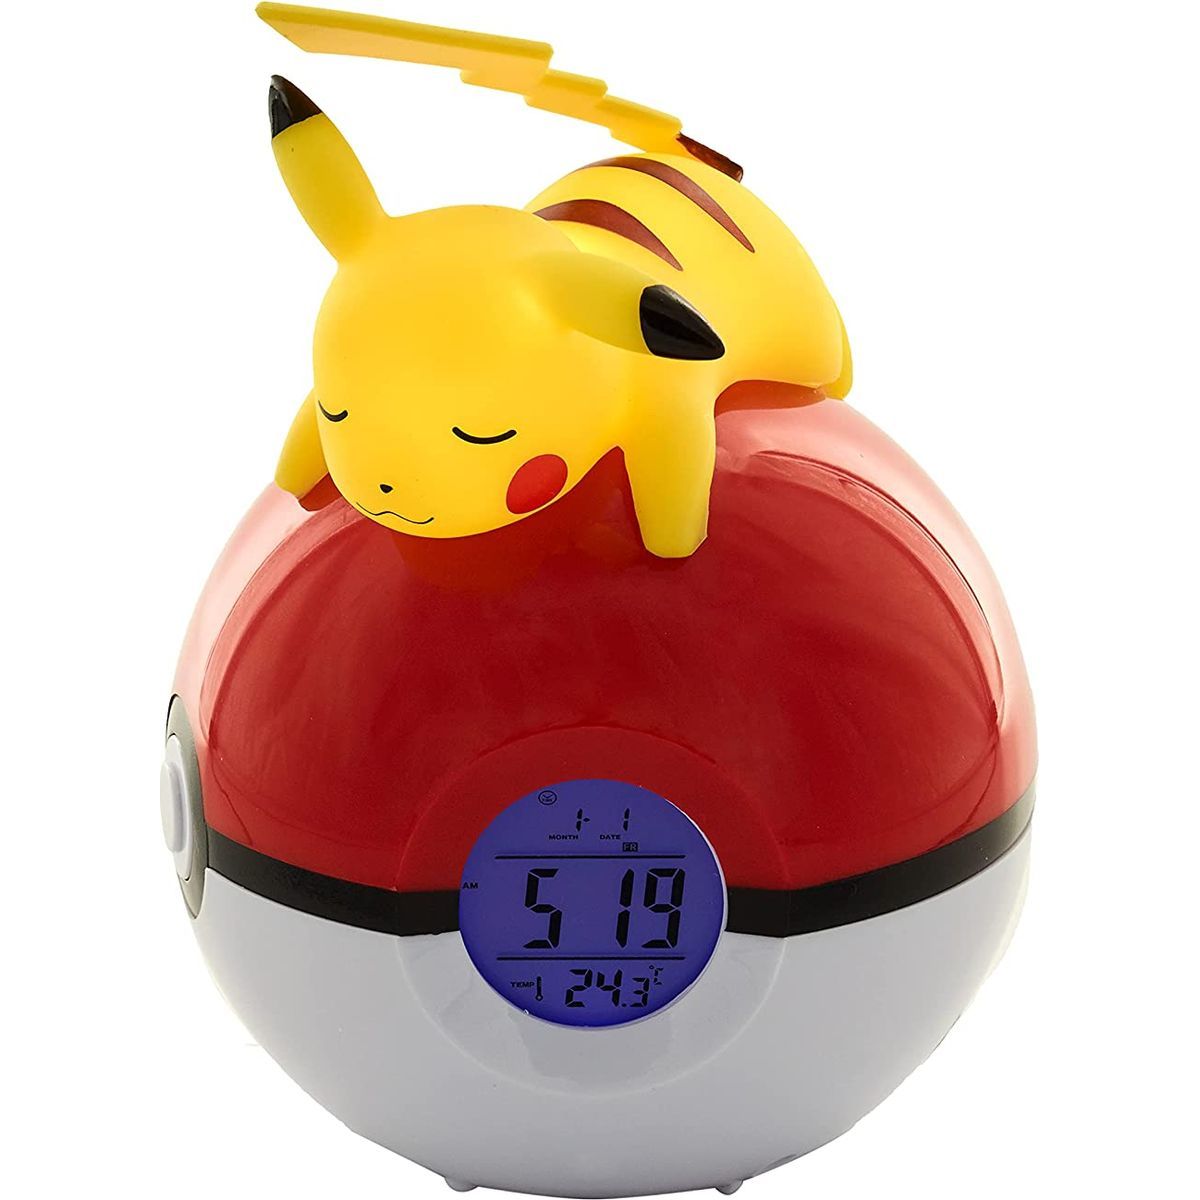 Pokémon Budík Pikachu & PokeBall